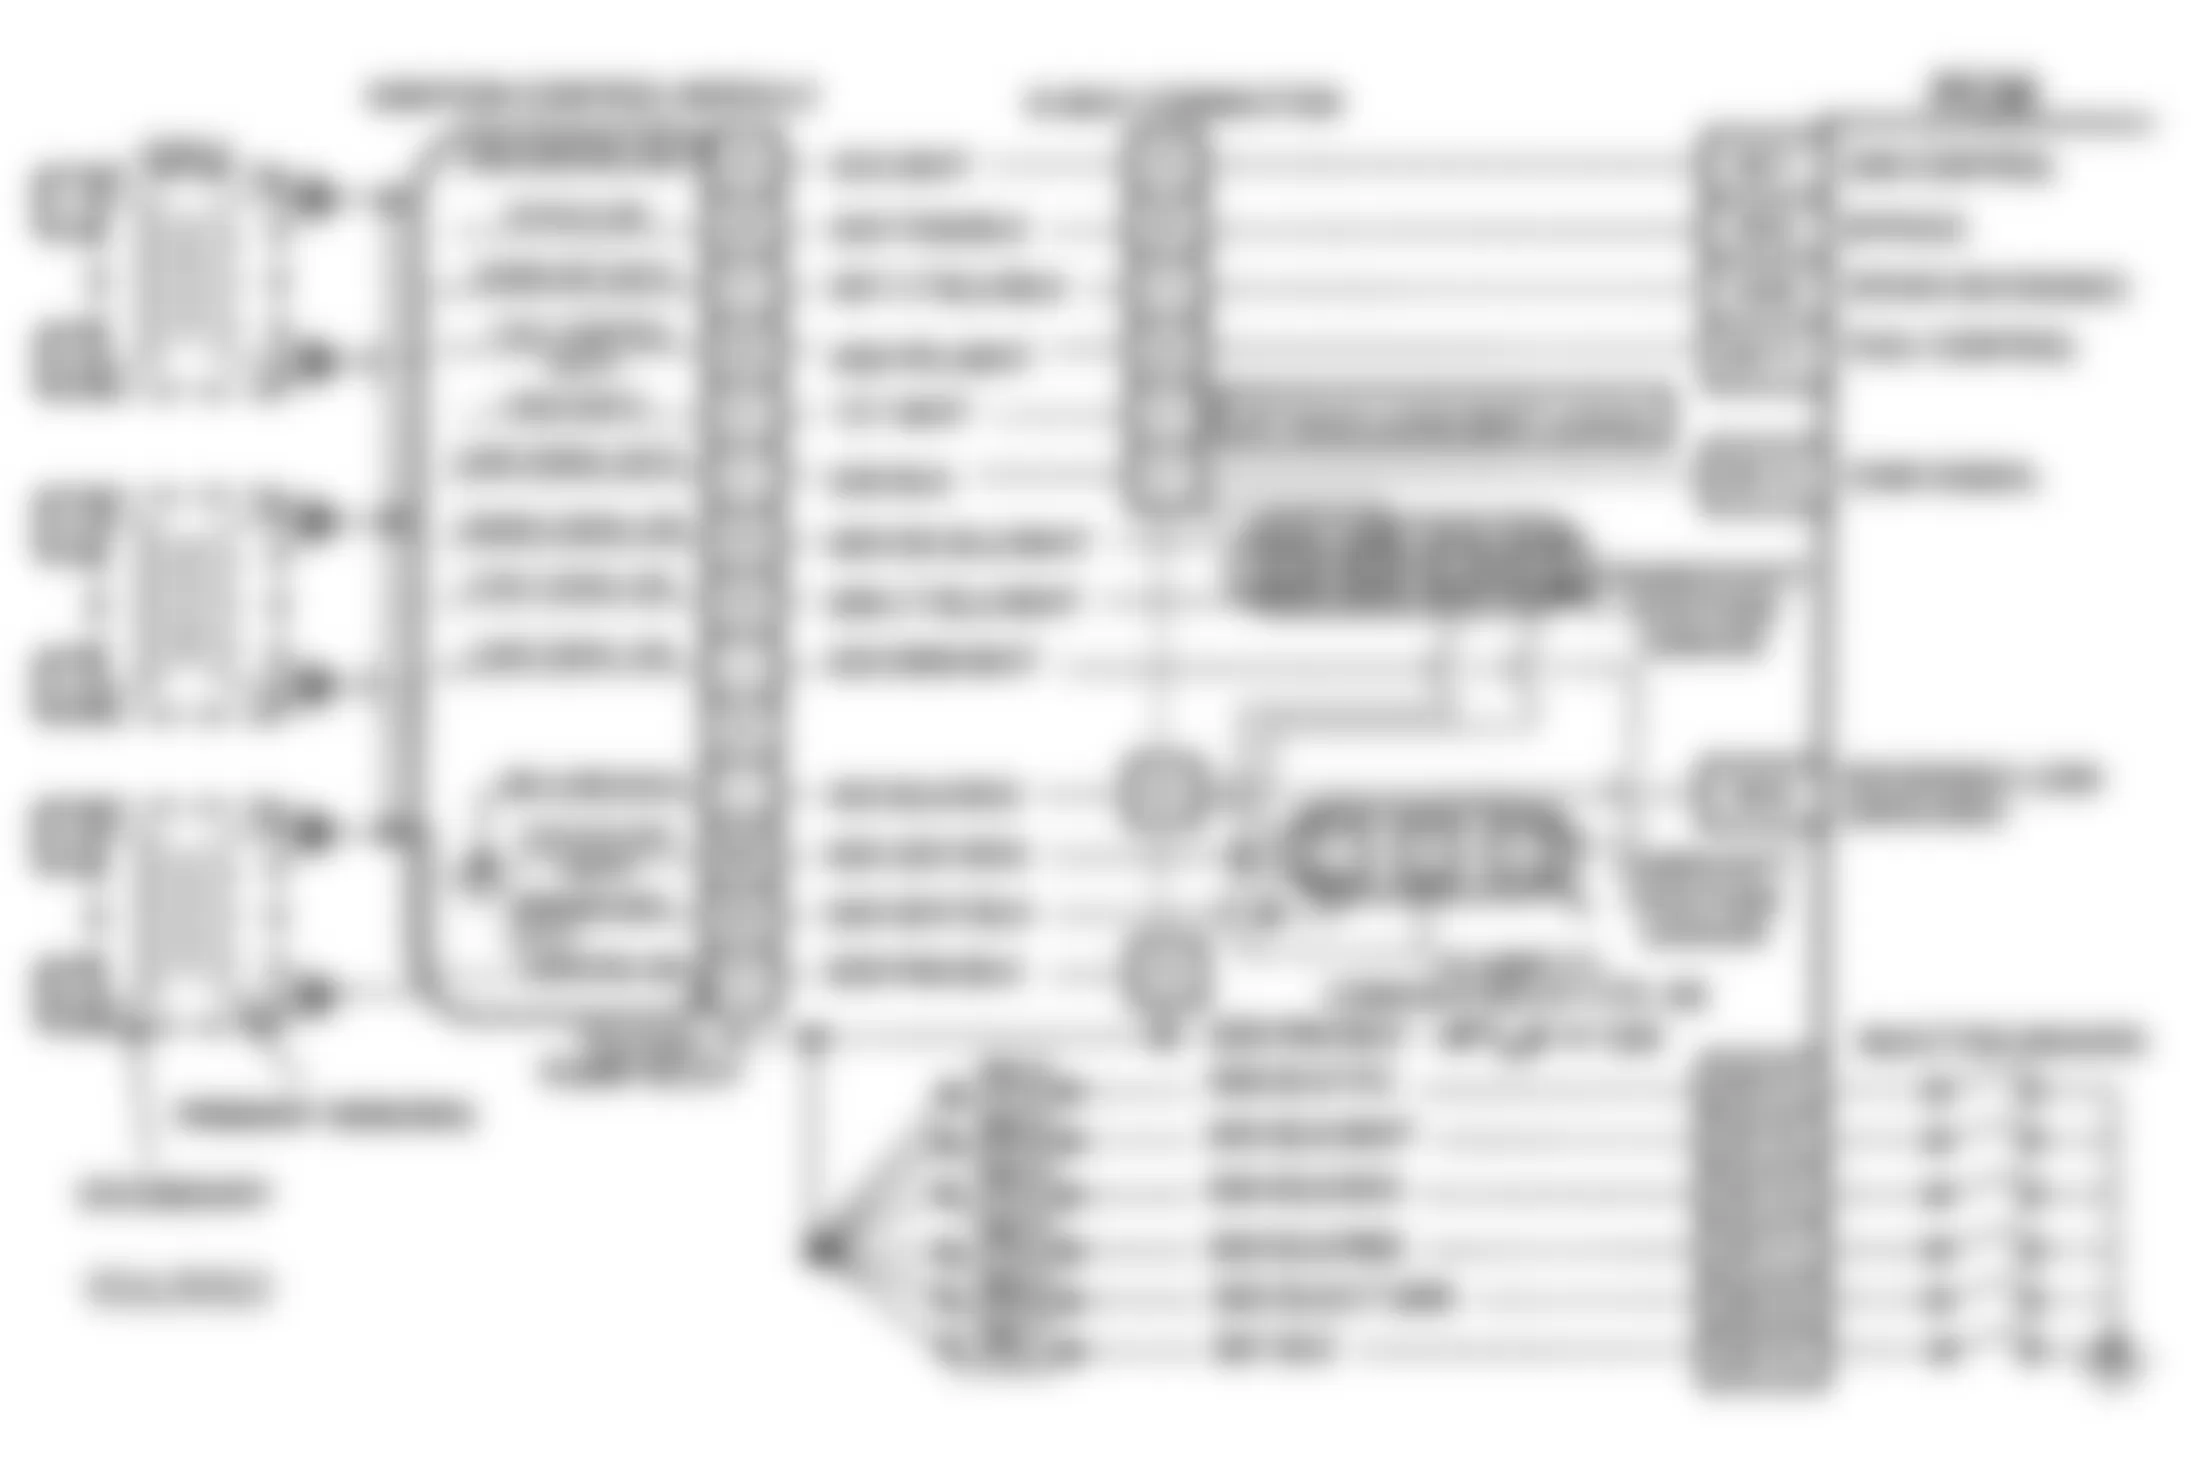 Buick Riviera 1993 - Component Locations -  Code 17 Schematic (3.8L E Body) RPM Signal Problem